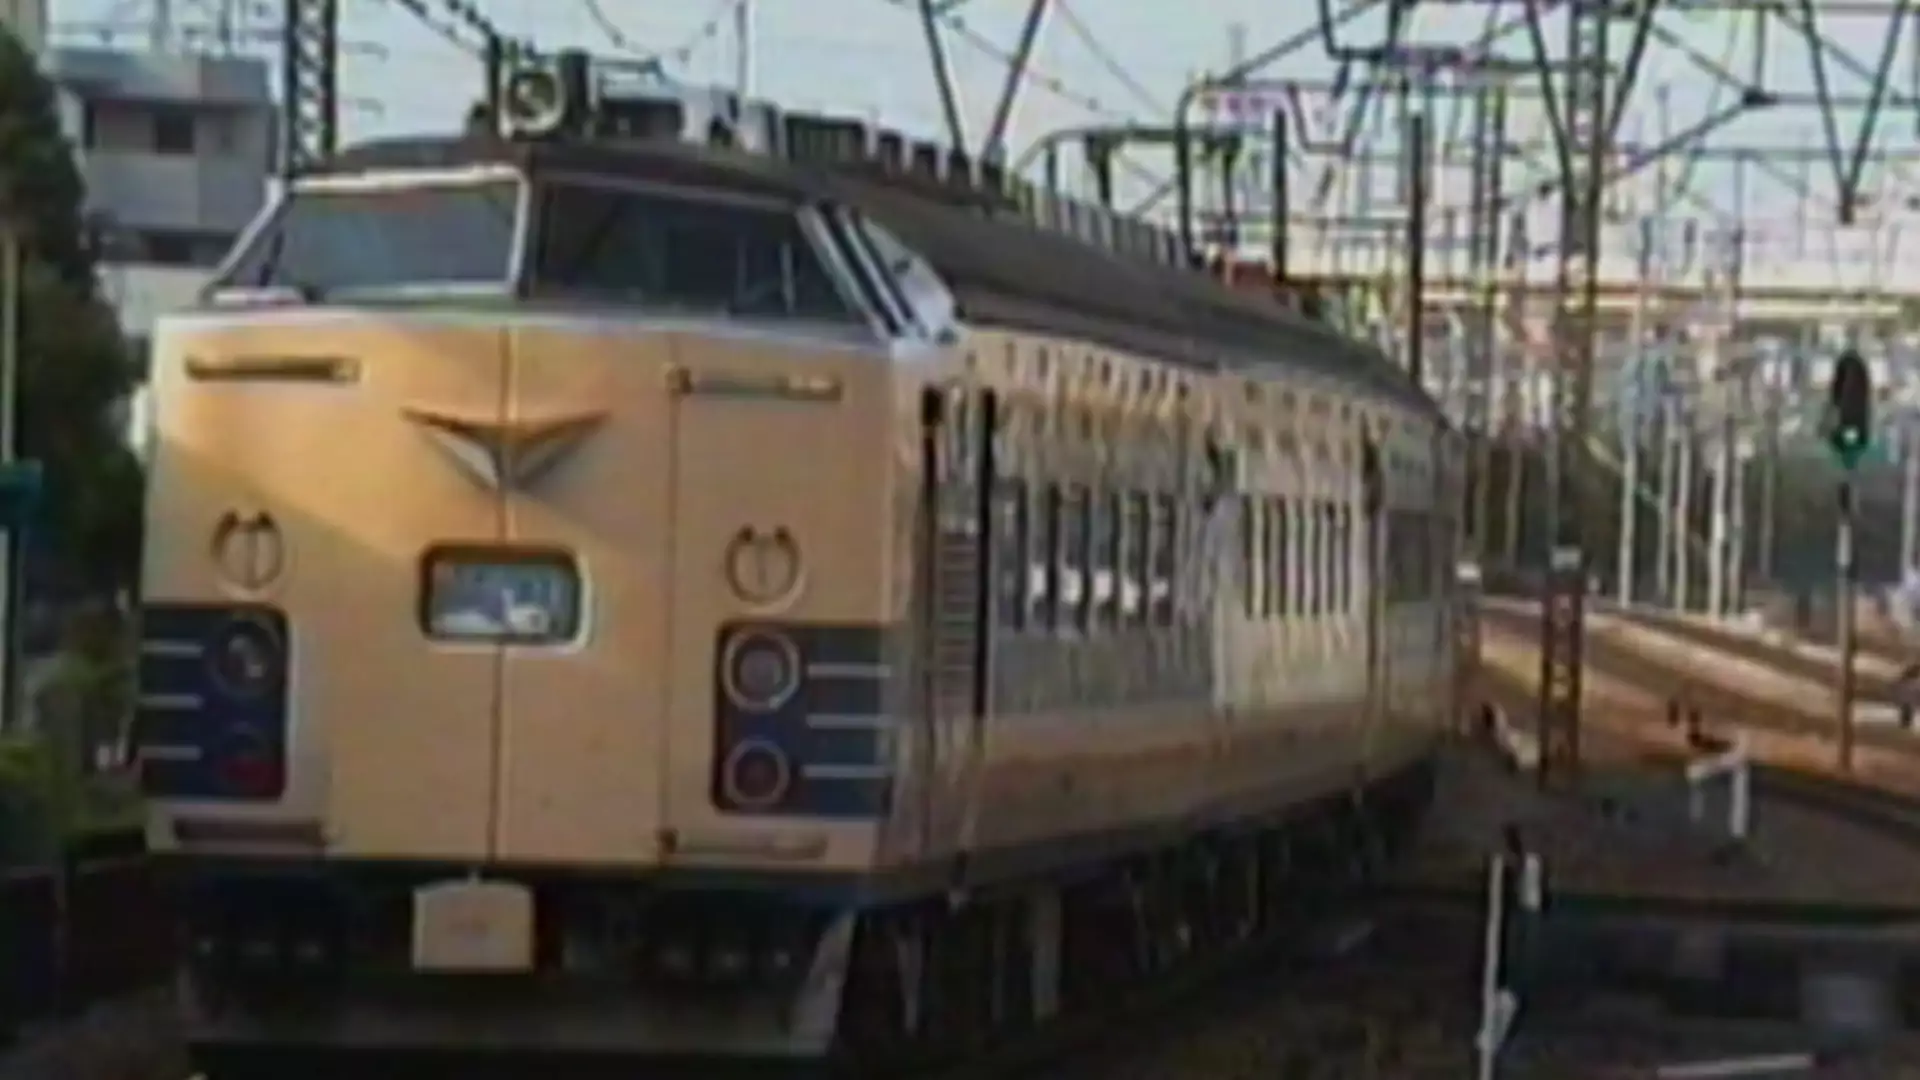 よみがえる２０世紀の列車たち３JR西日本Ⅱ